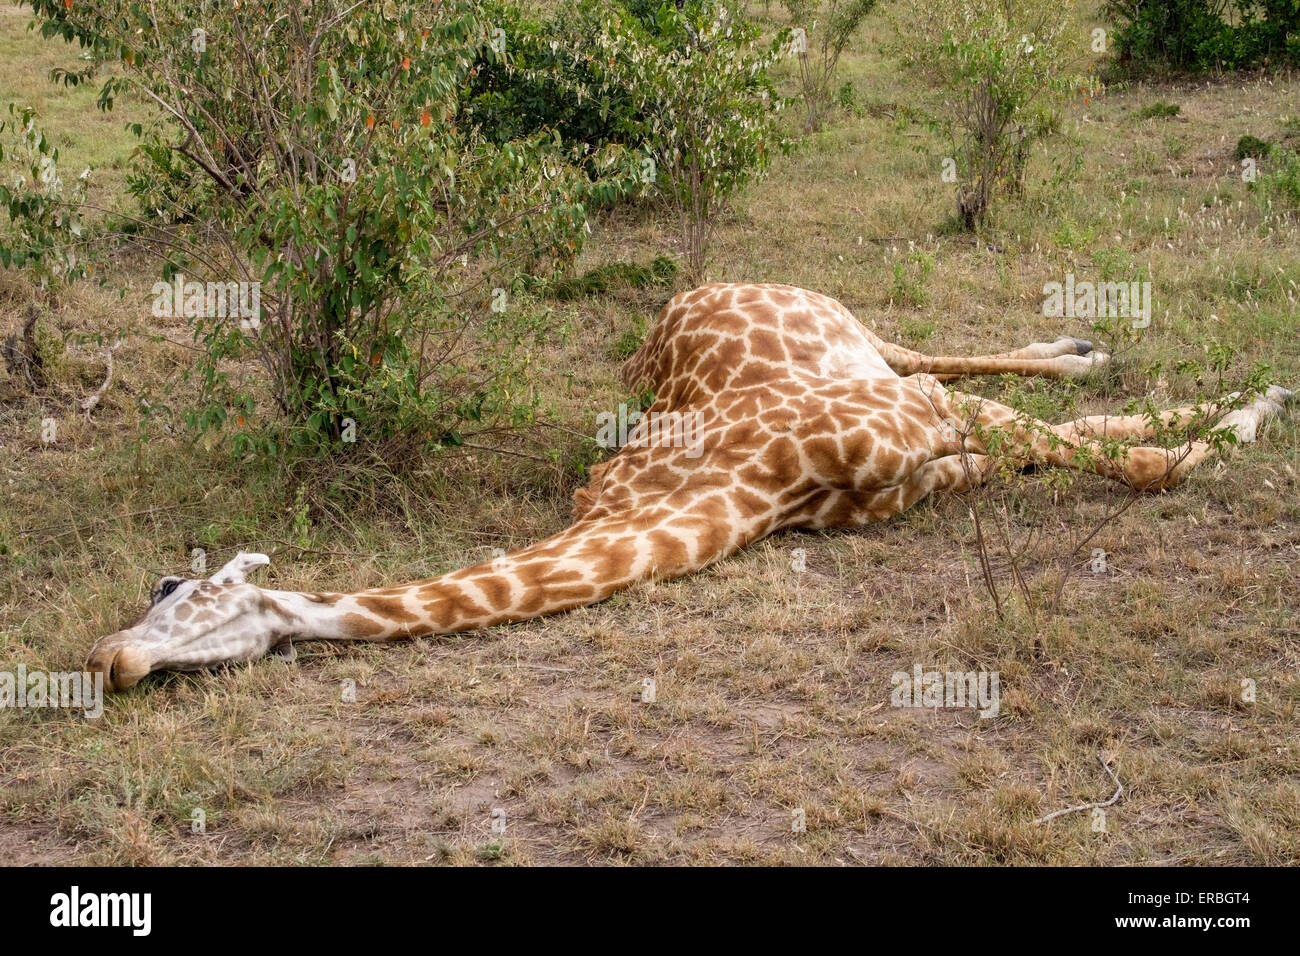 giraffe-giraffa-camelopardalis-adult-lying-fresh-dead-on-ground-masai-ERBGT4.jpg